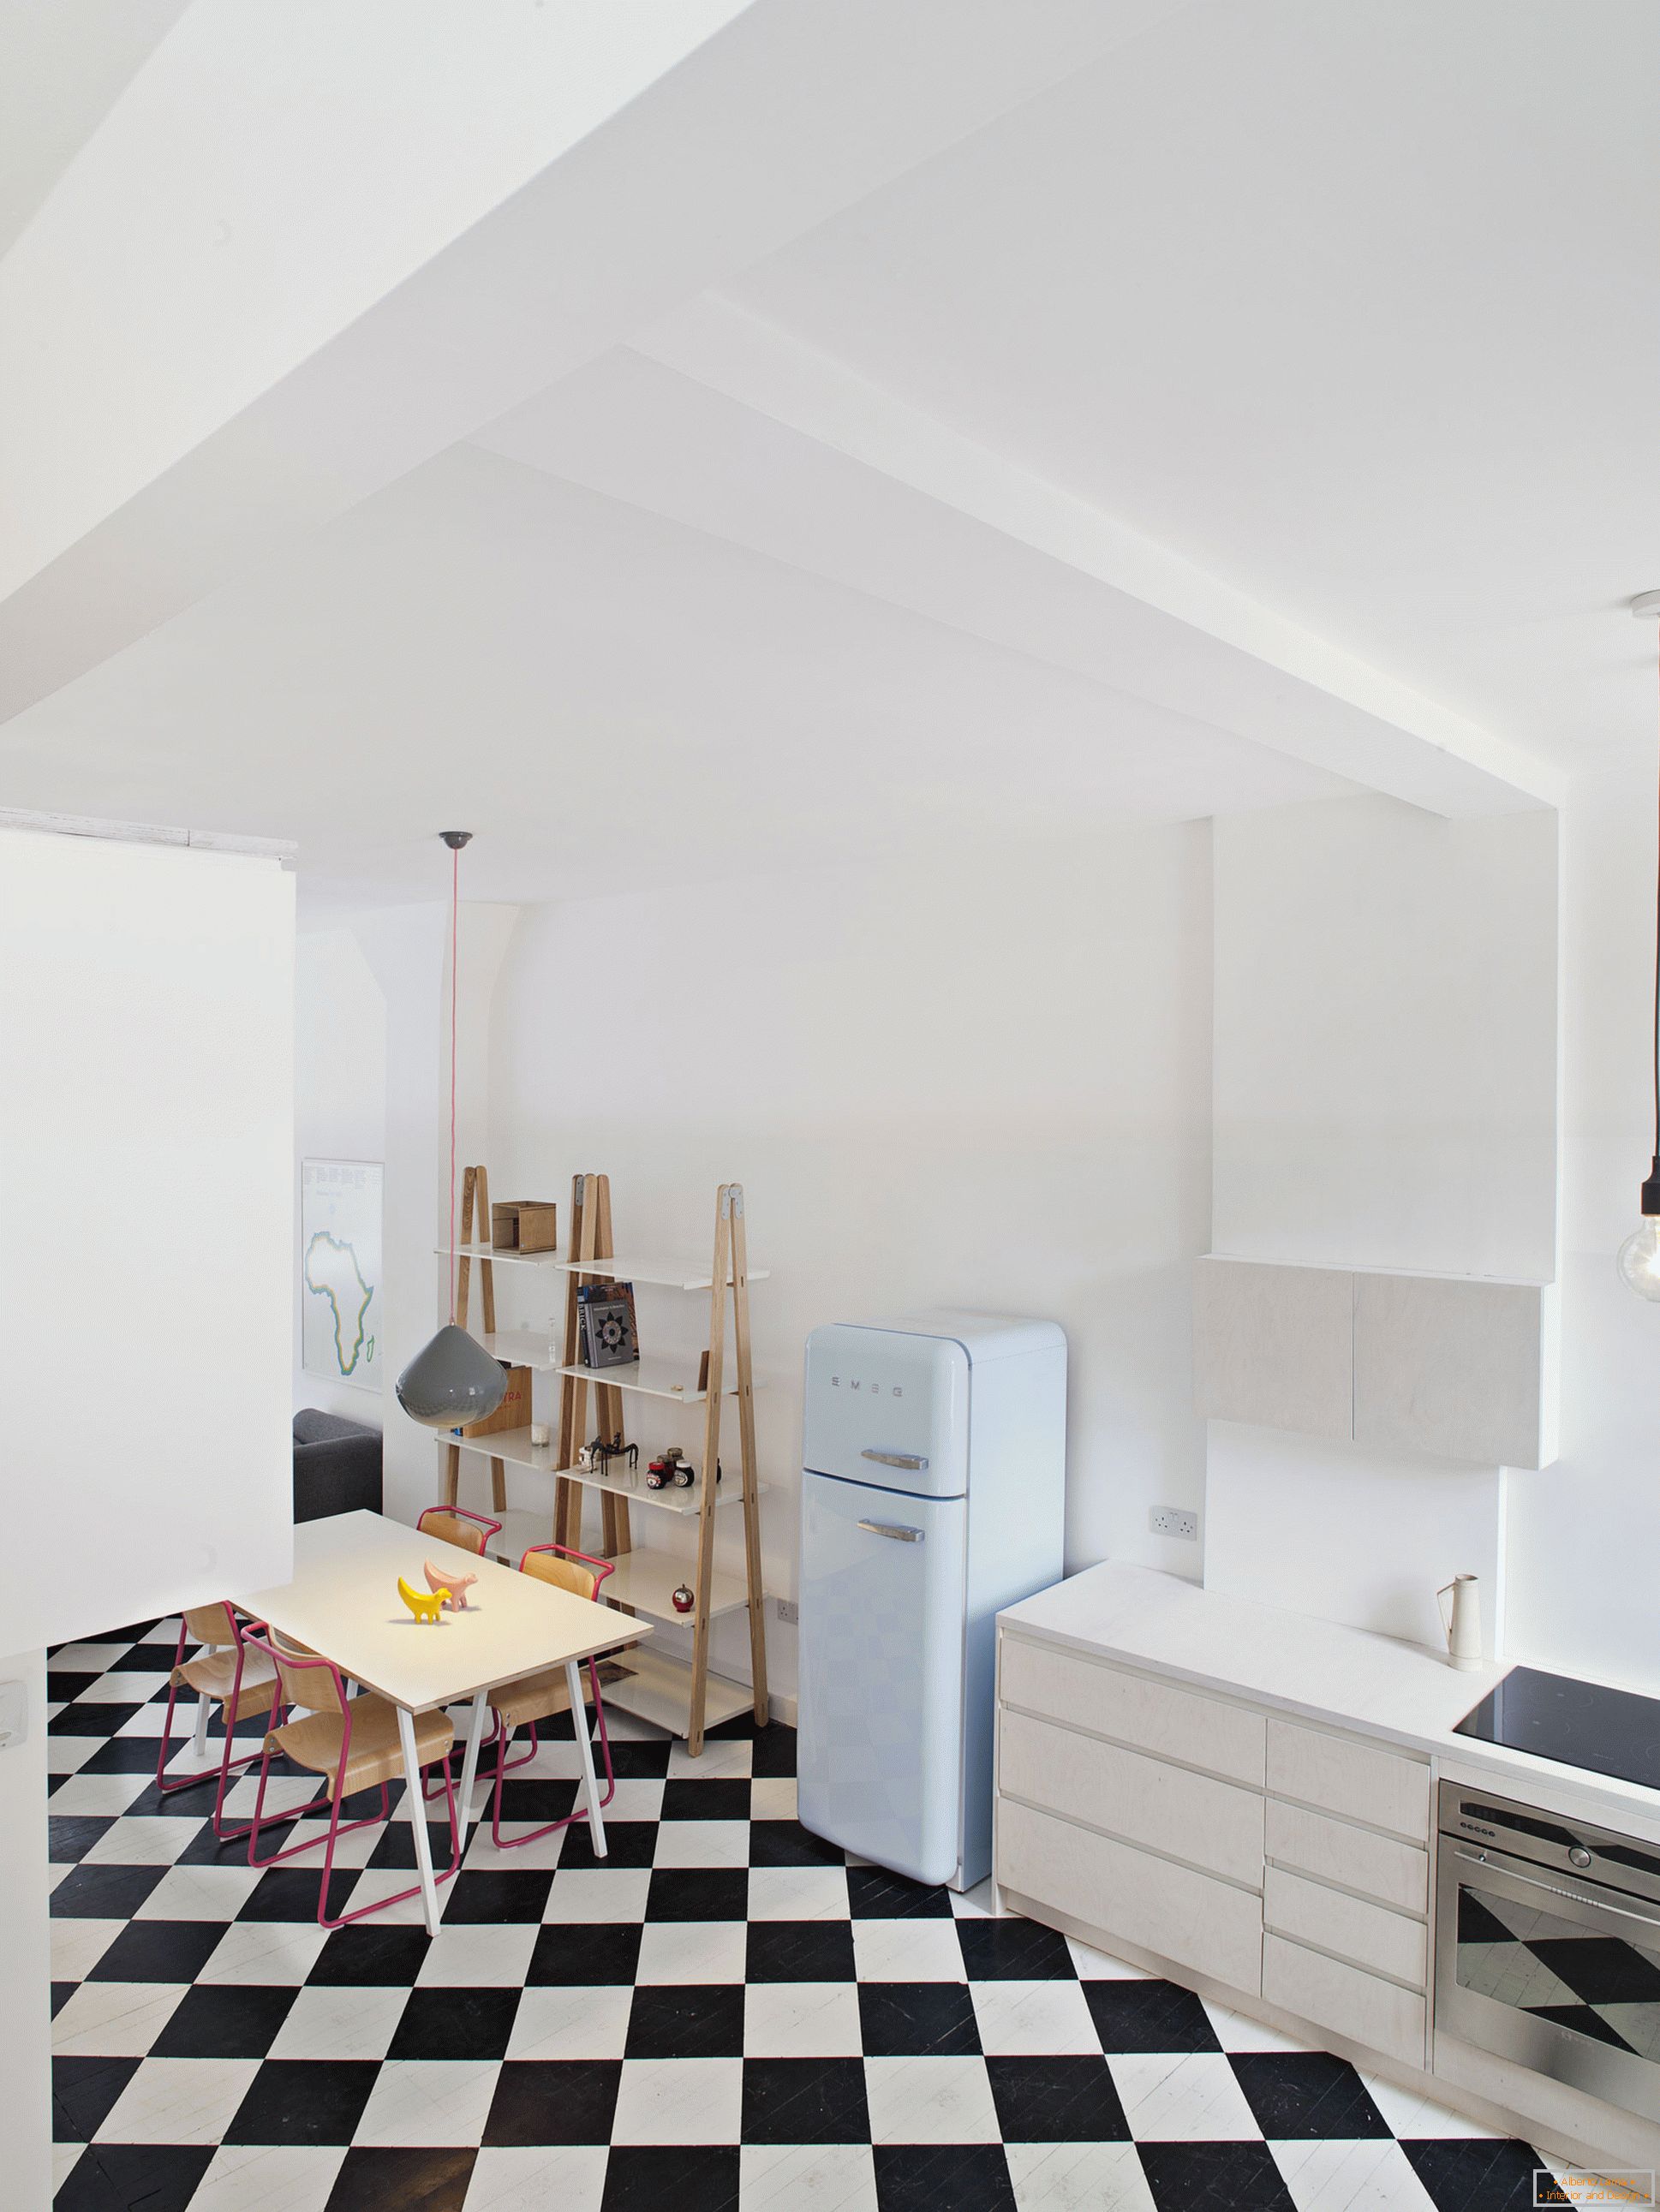 City View House - пекарна, превърната в жилищен студио апартамент, Лондон, Великобритания